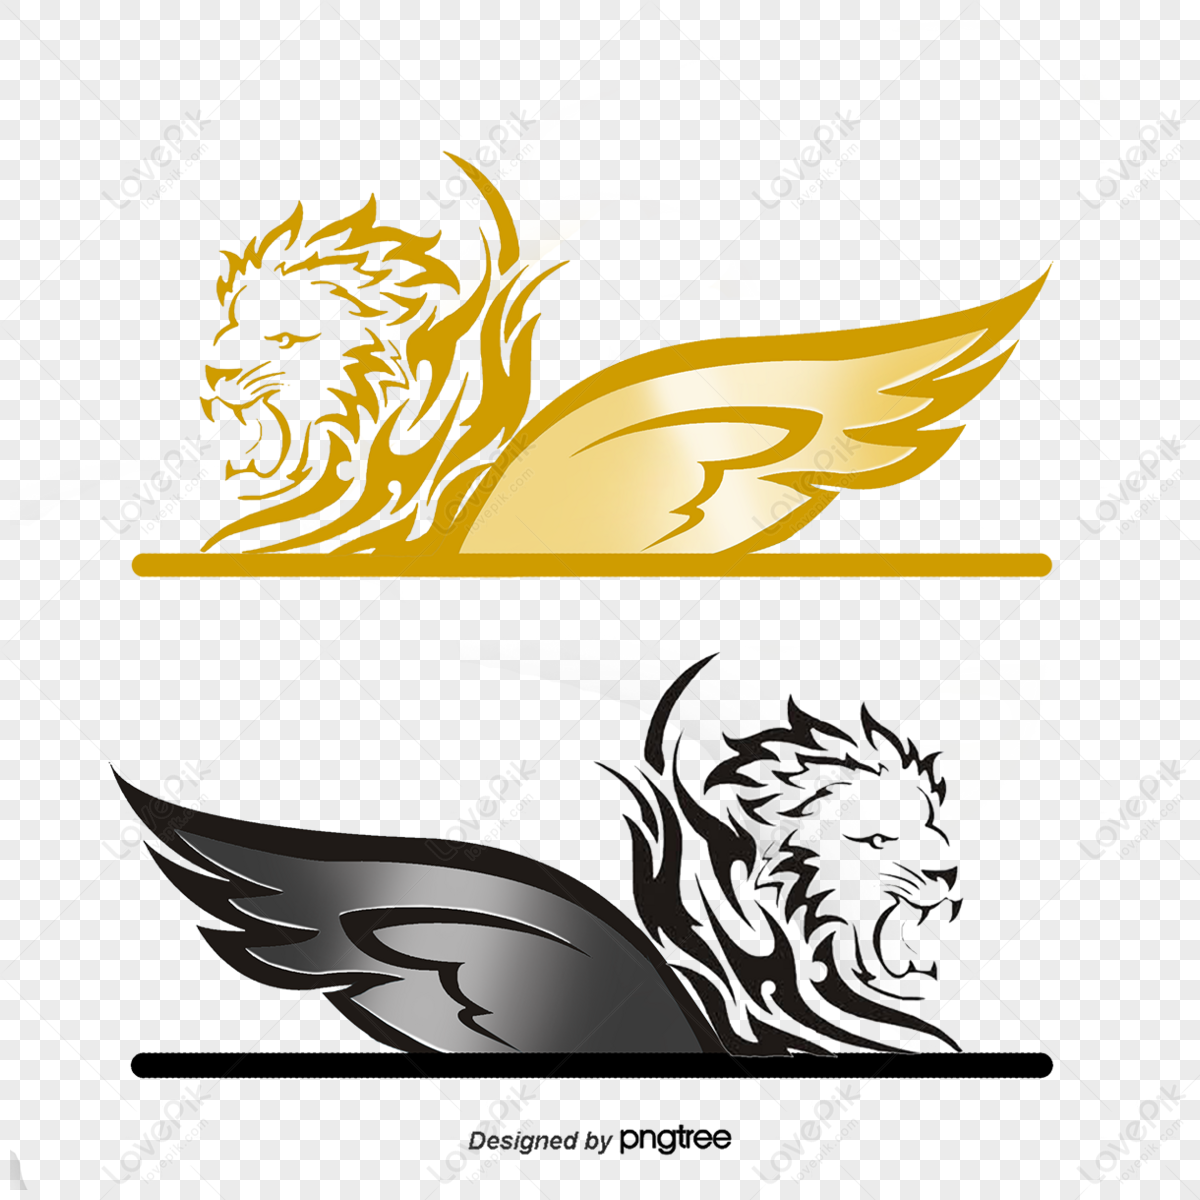 Golden Lion PNG Transparent Images Free Download | Vector Files | Pngtree